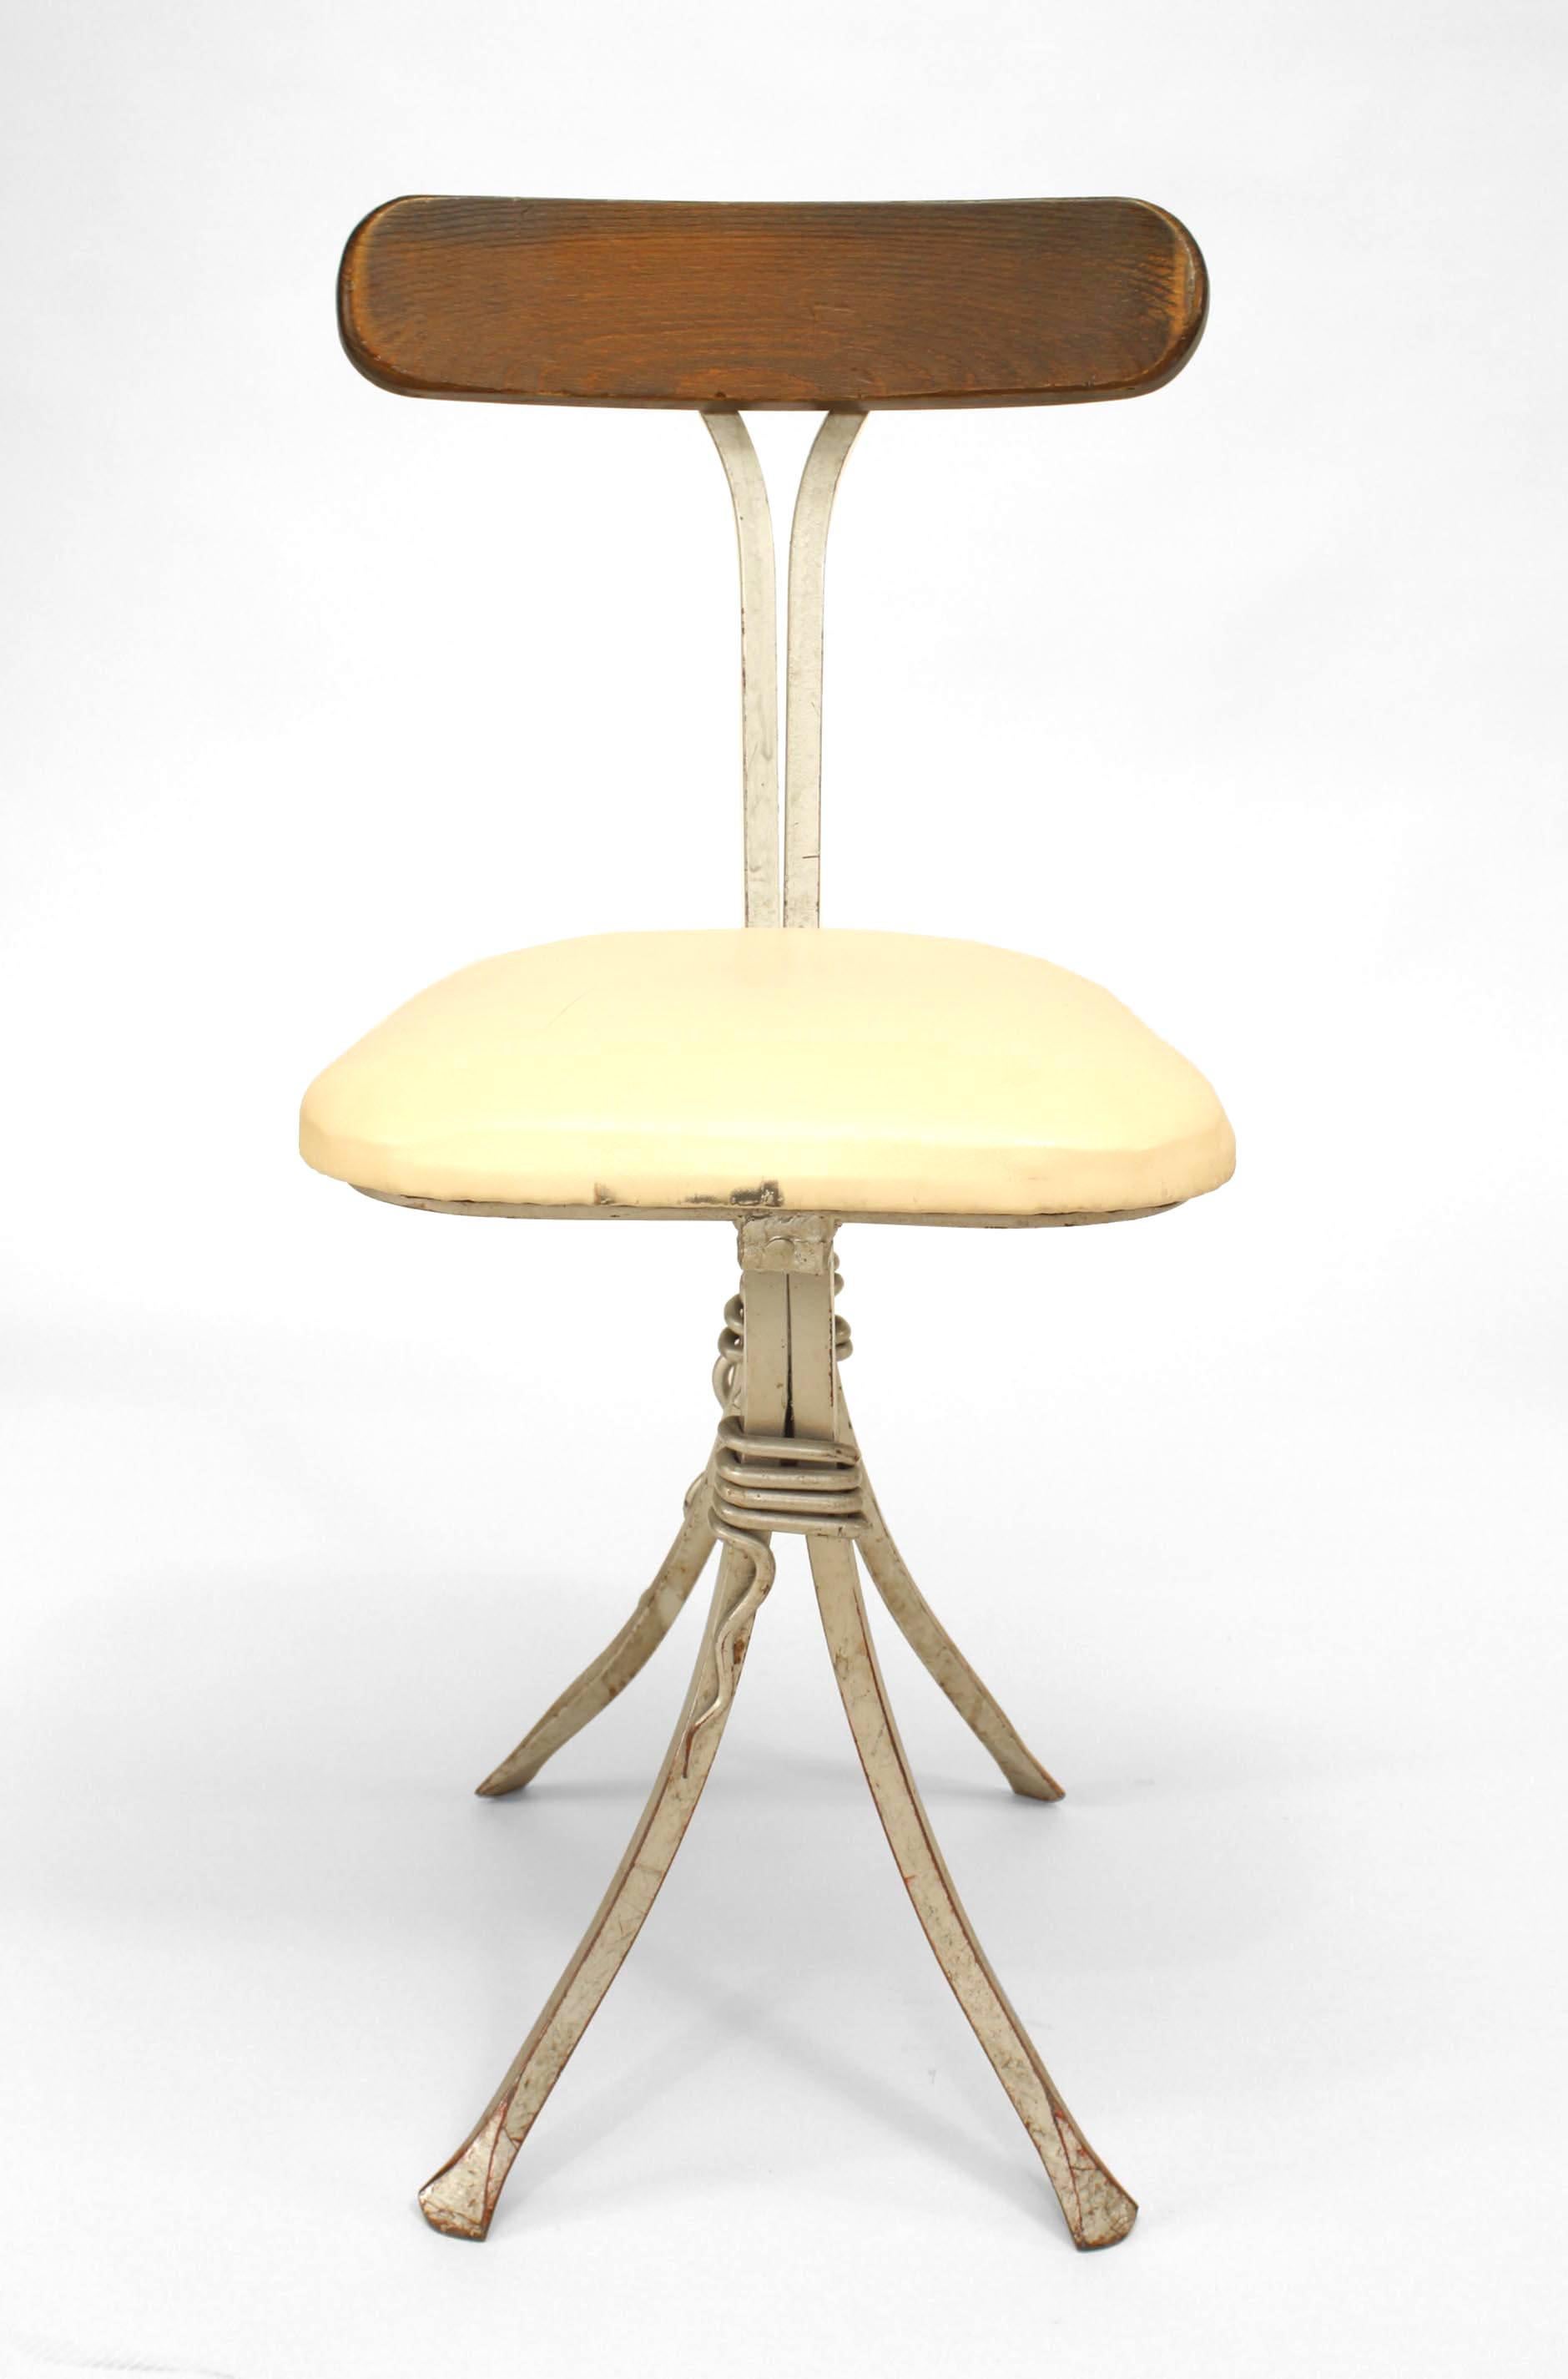 Satz von 8 französischen Mid Century modern schmiedeeisernen silber lackiert Café Stühle mit 2 Paar Füße mit dekorativen trim verbunden mit einer Bahre und einem gepolsterten Sitz & Holz Rückenlehne.
